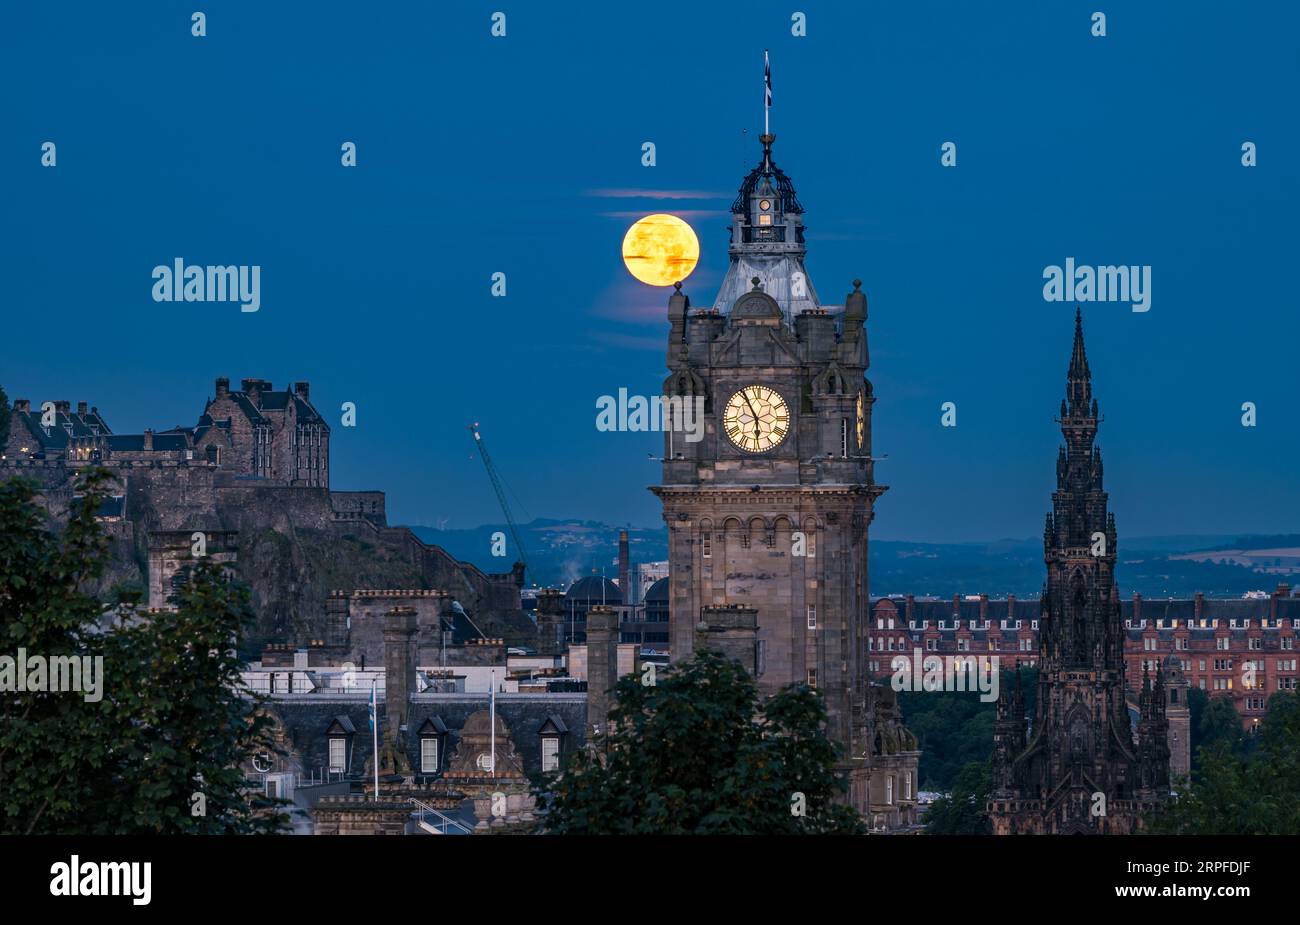 Skyline de la ville avec superlune bleue complète sur la tour de l'horloge Balmoral, le monument Scott et le château d'Édimbourg, Écosse, Royaume-Uni Banque D'Images